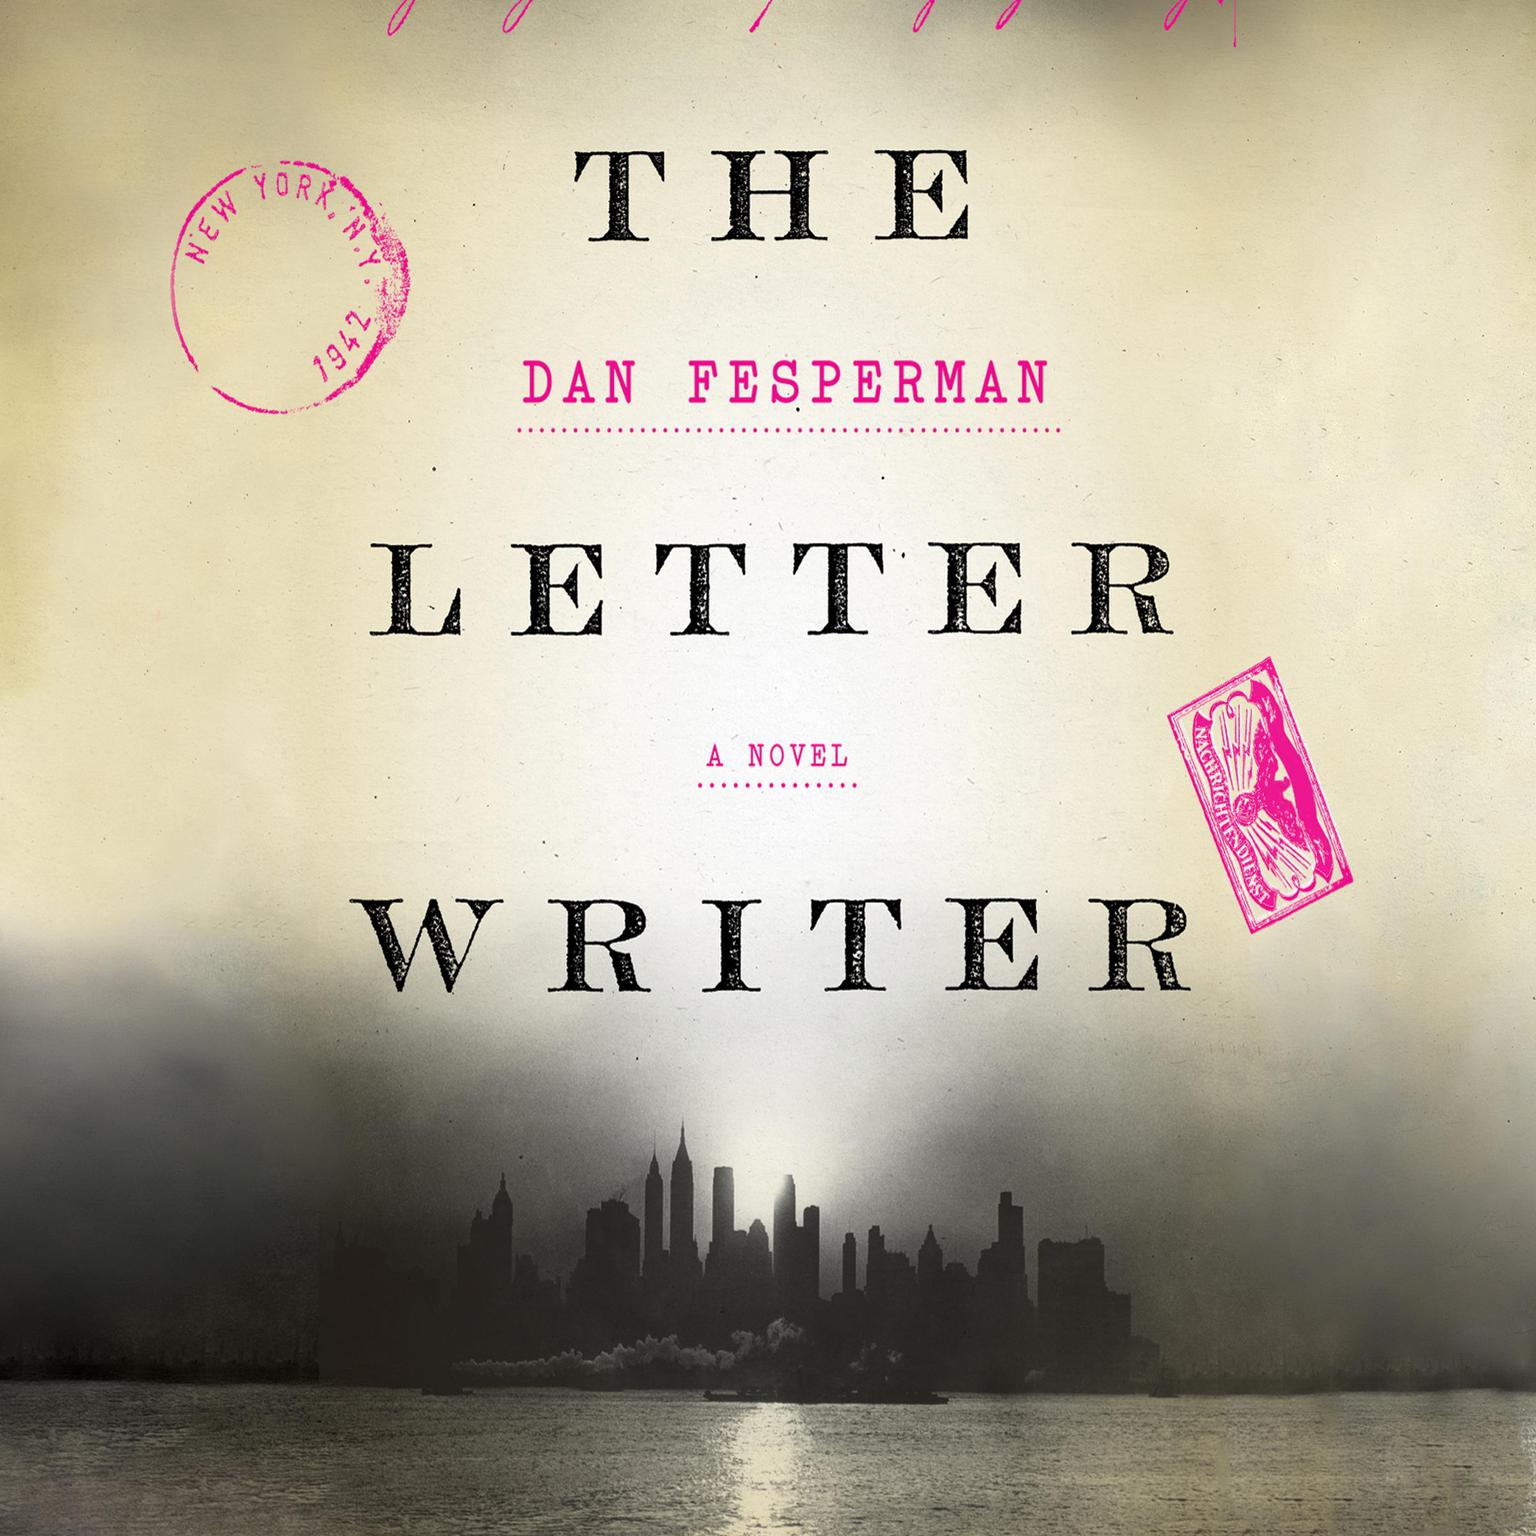 The Letter Writer: A Novel Audiobook, by Dan Fesperman